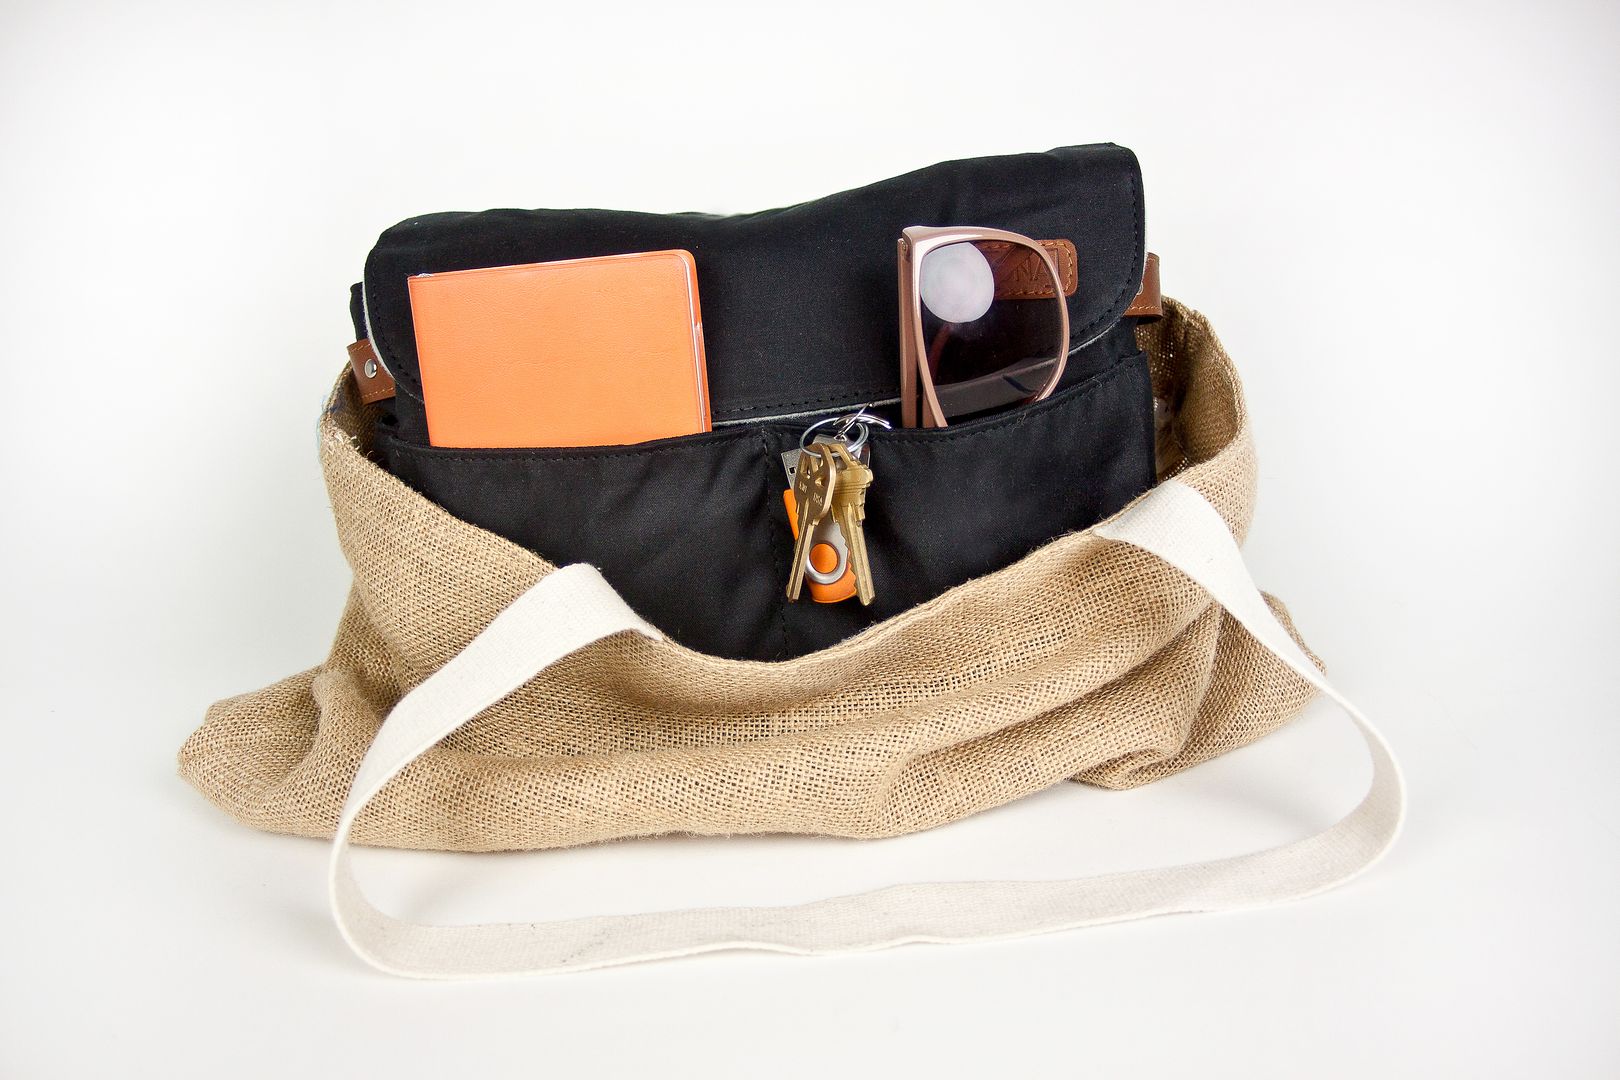 Camera bag inserts - turn any handbag into a camera bag